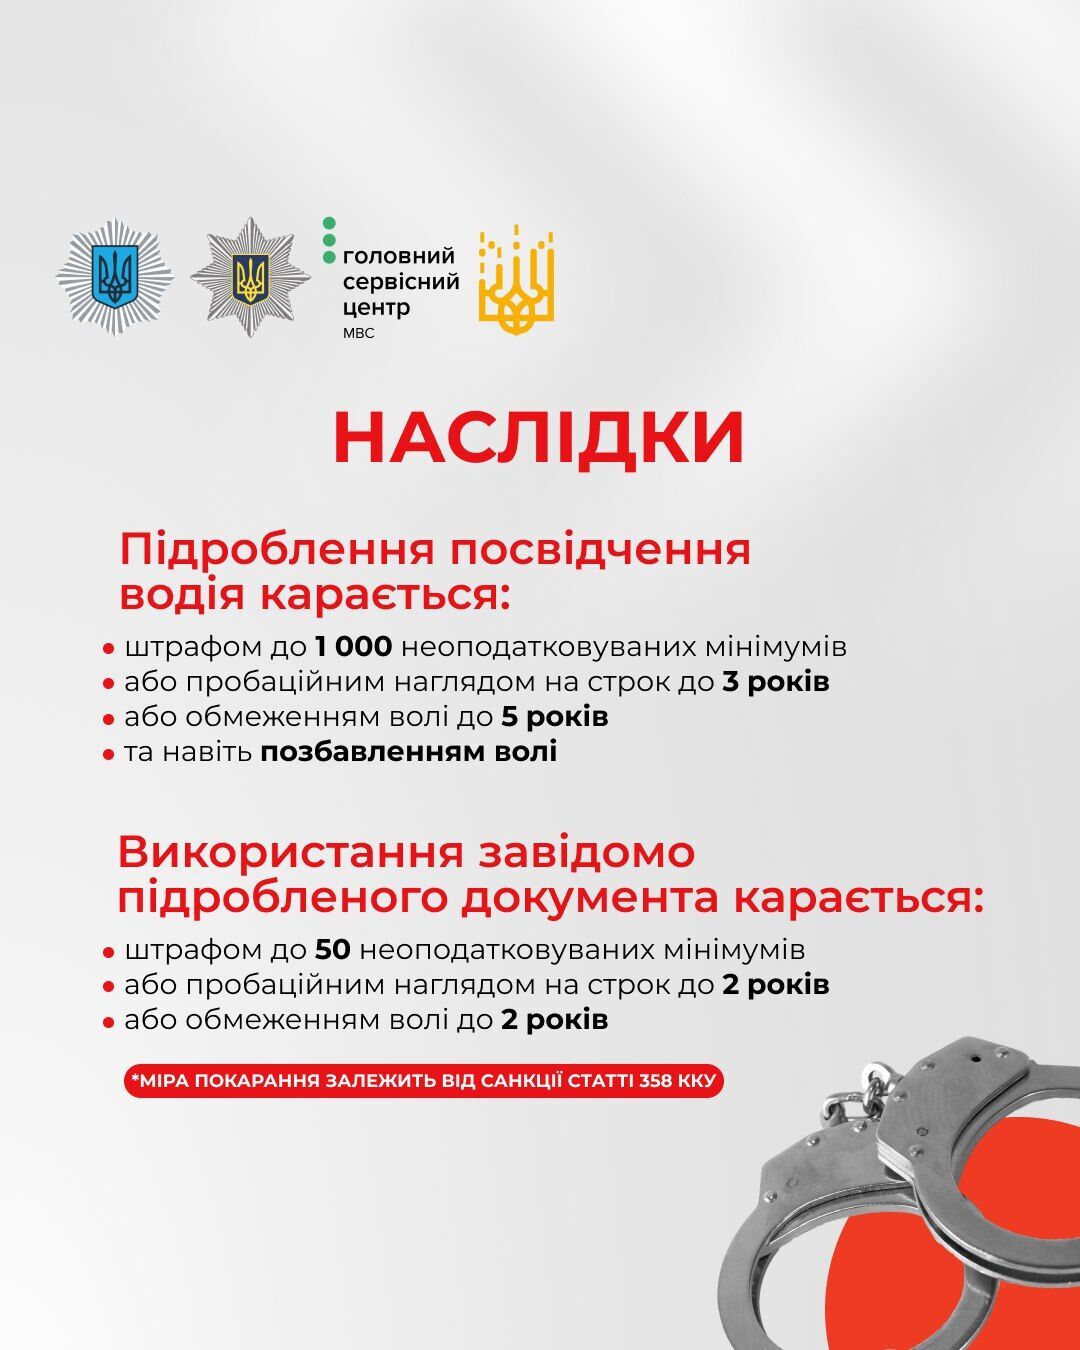 Украинцев предостерегли от покупки фальшивых водительских удостоверений: чем чревато